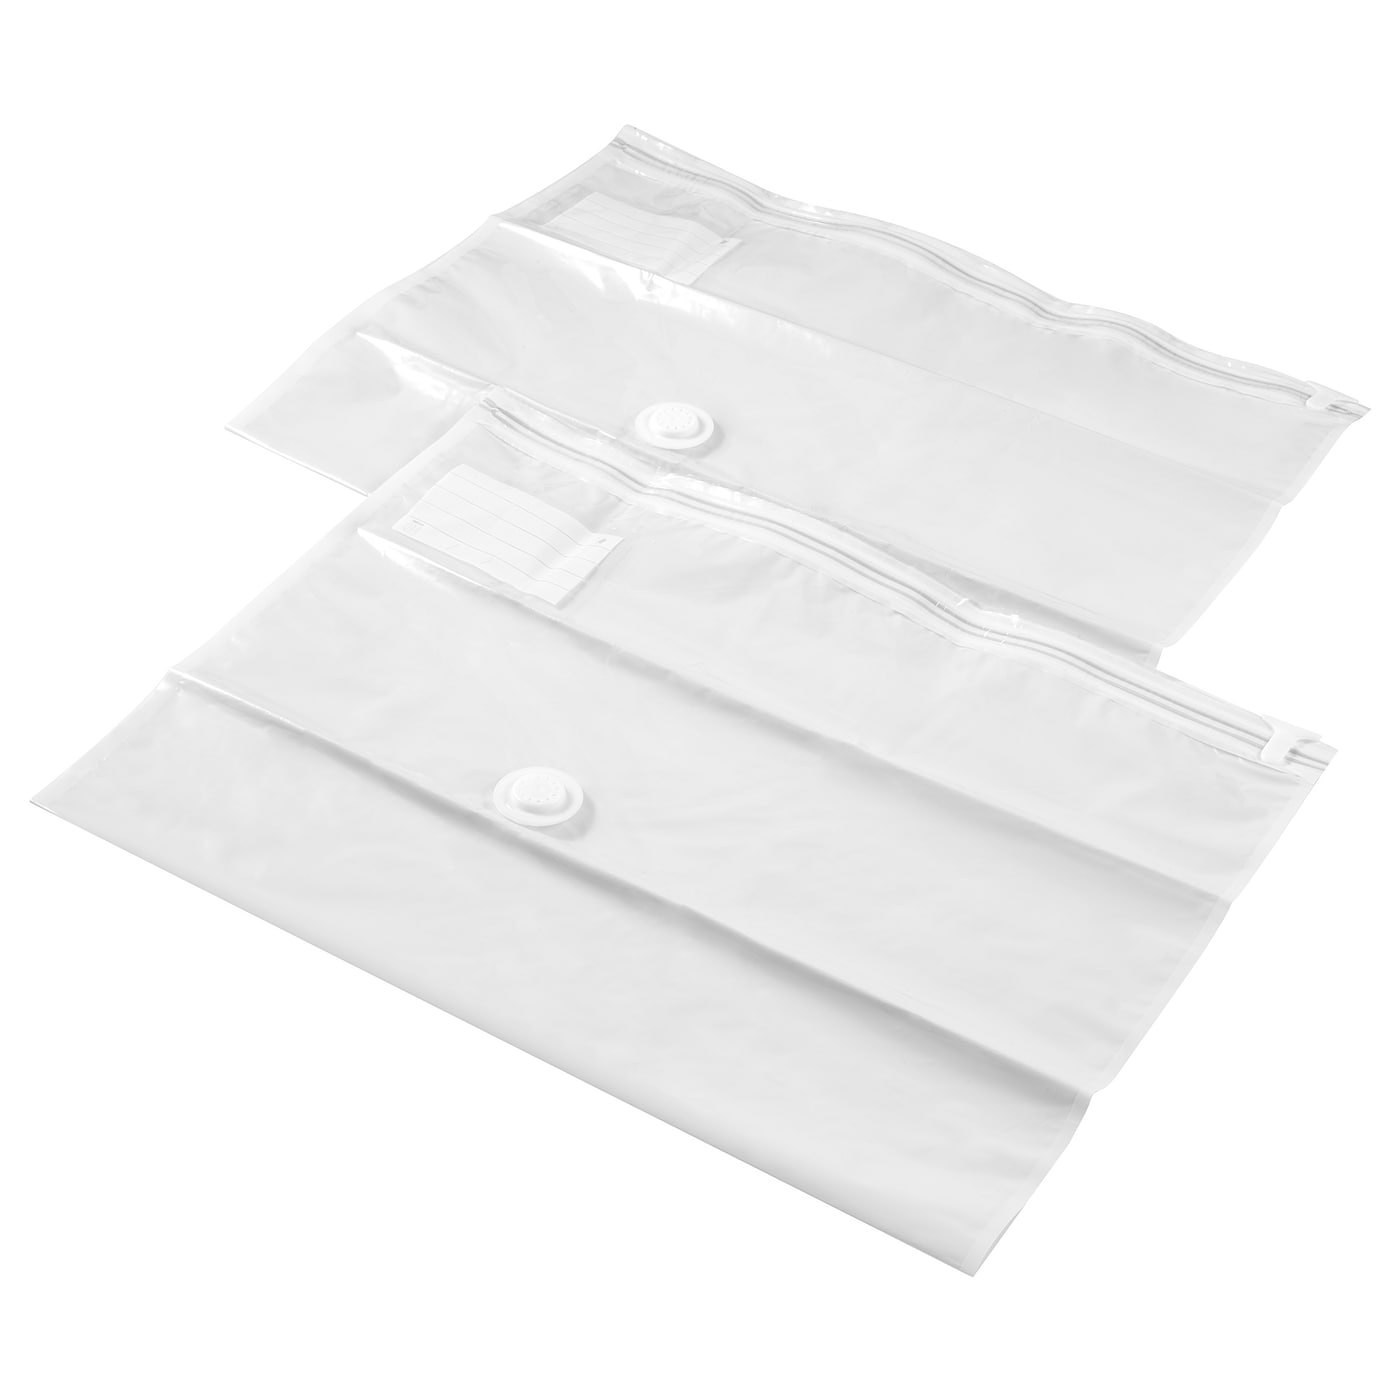 SPANTAD Вакуумный пакет, светло-серый, 67x100 см2 шт. IKEA кофр большой black для хранения одеял подушек и пледов